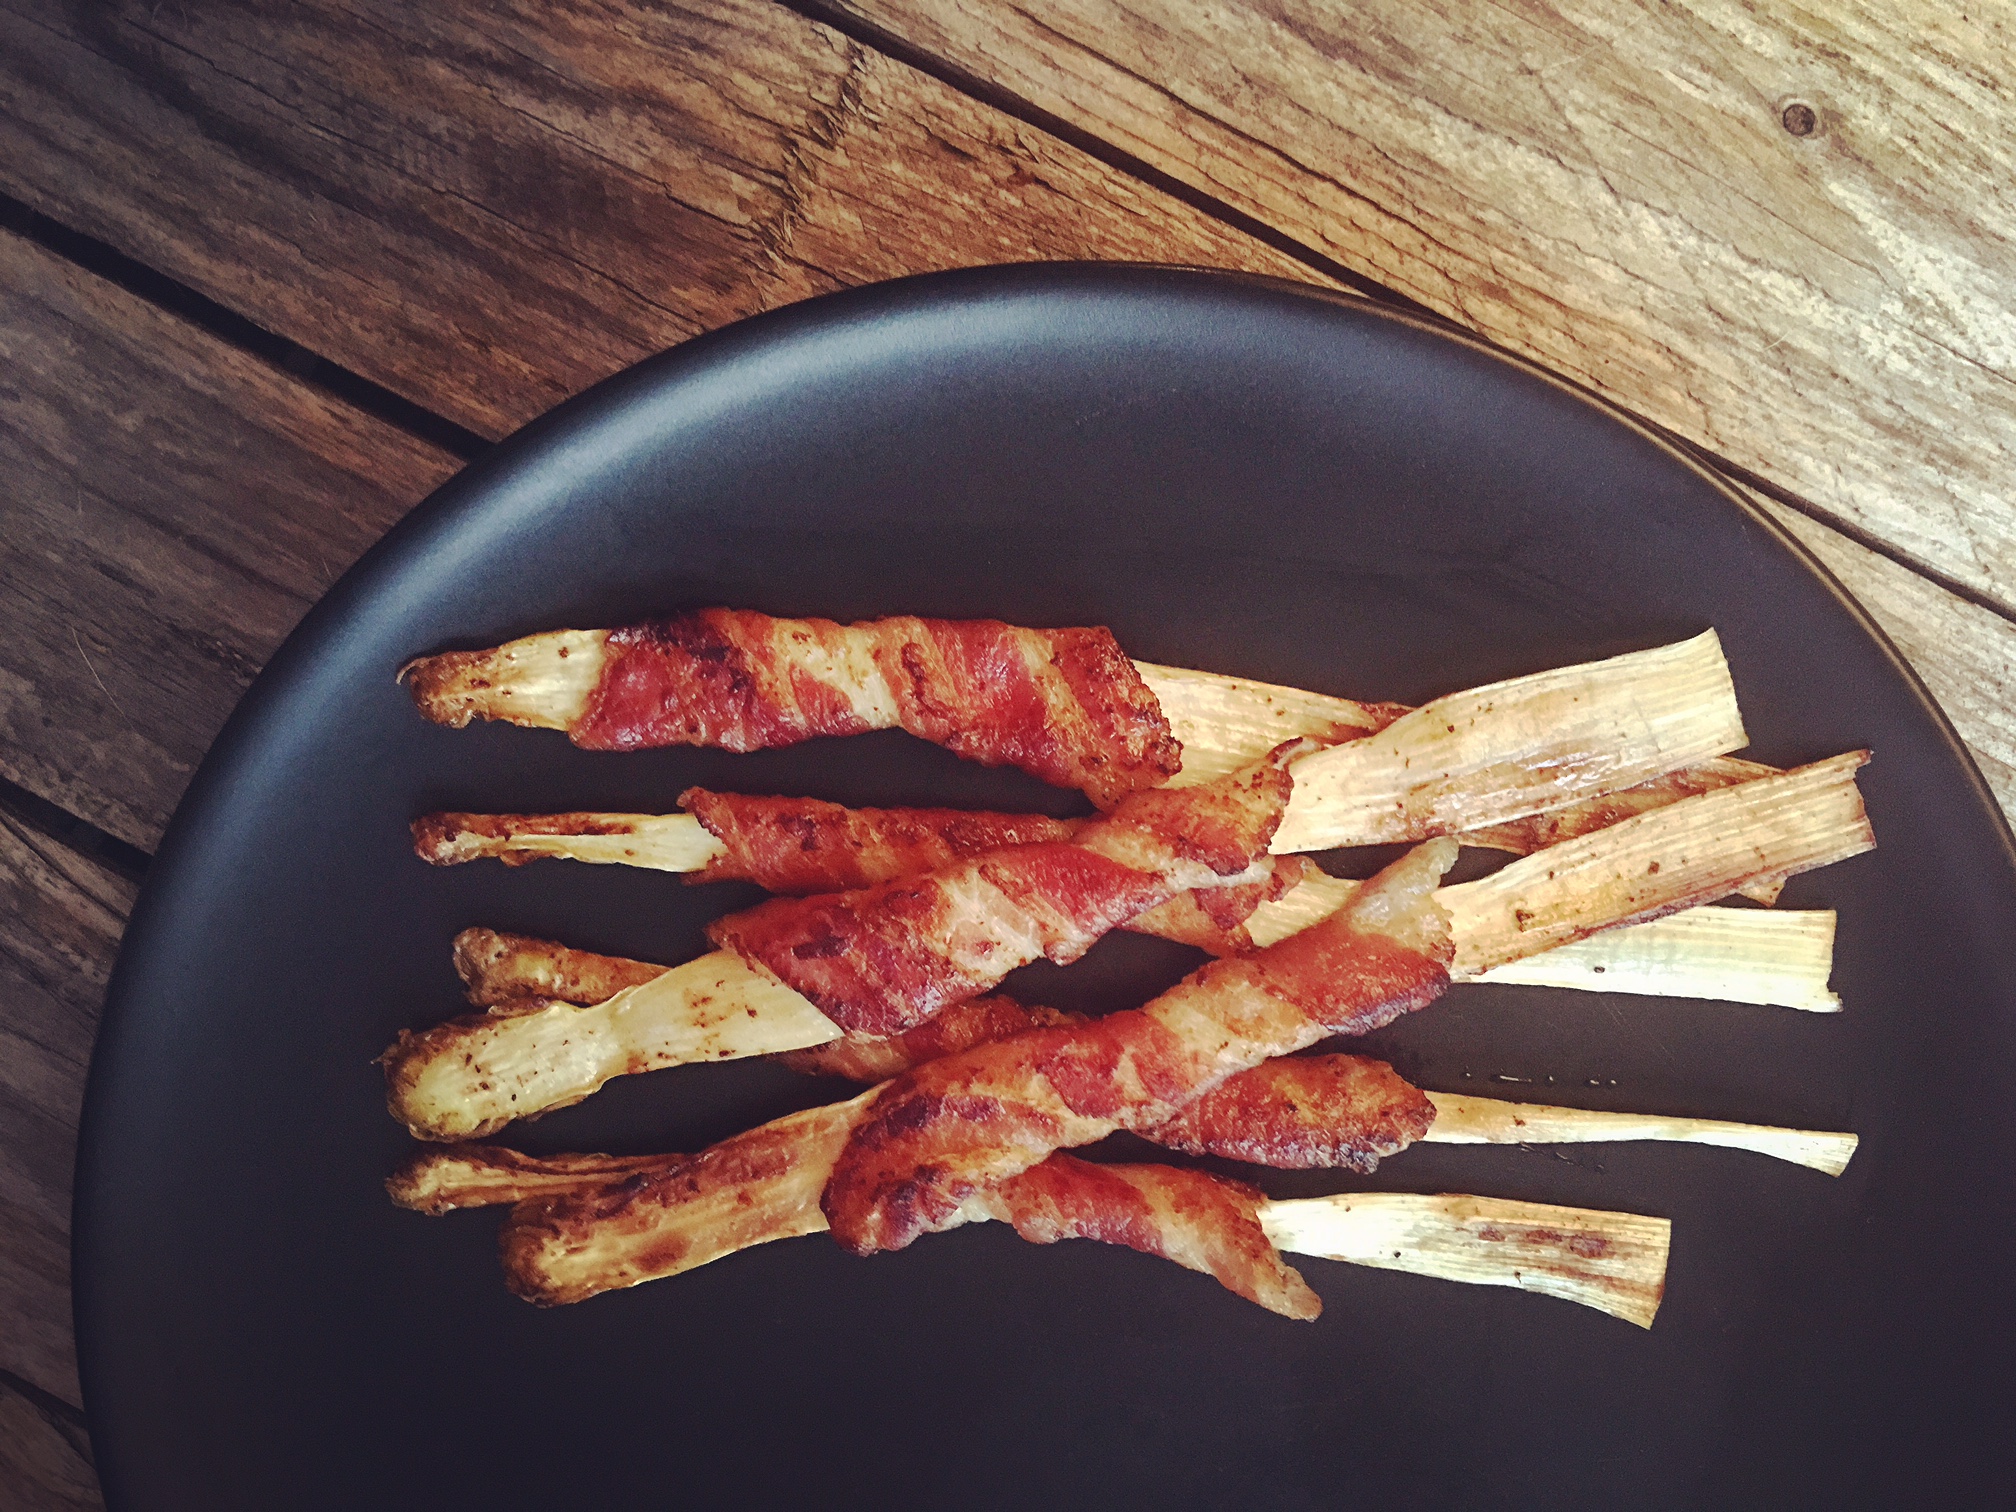 In Bacon gebratener weißer Spargel - einfach köstlich!